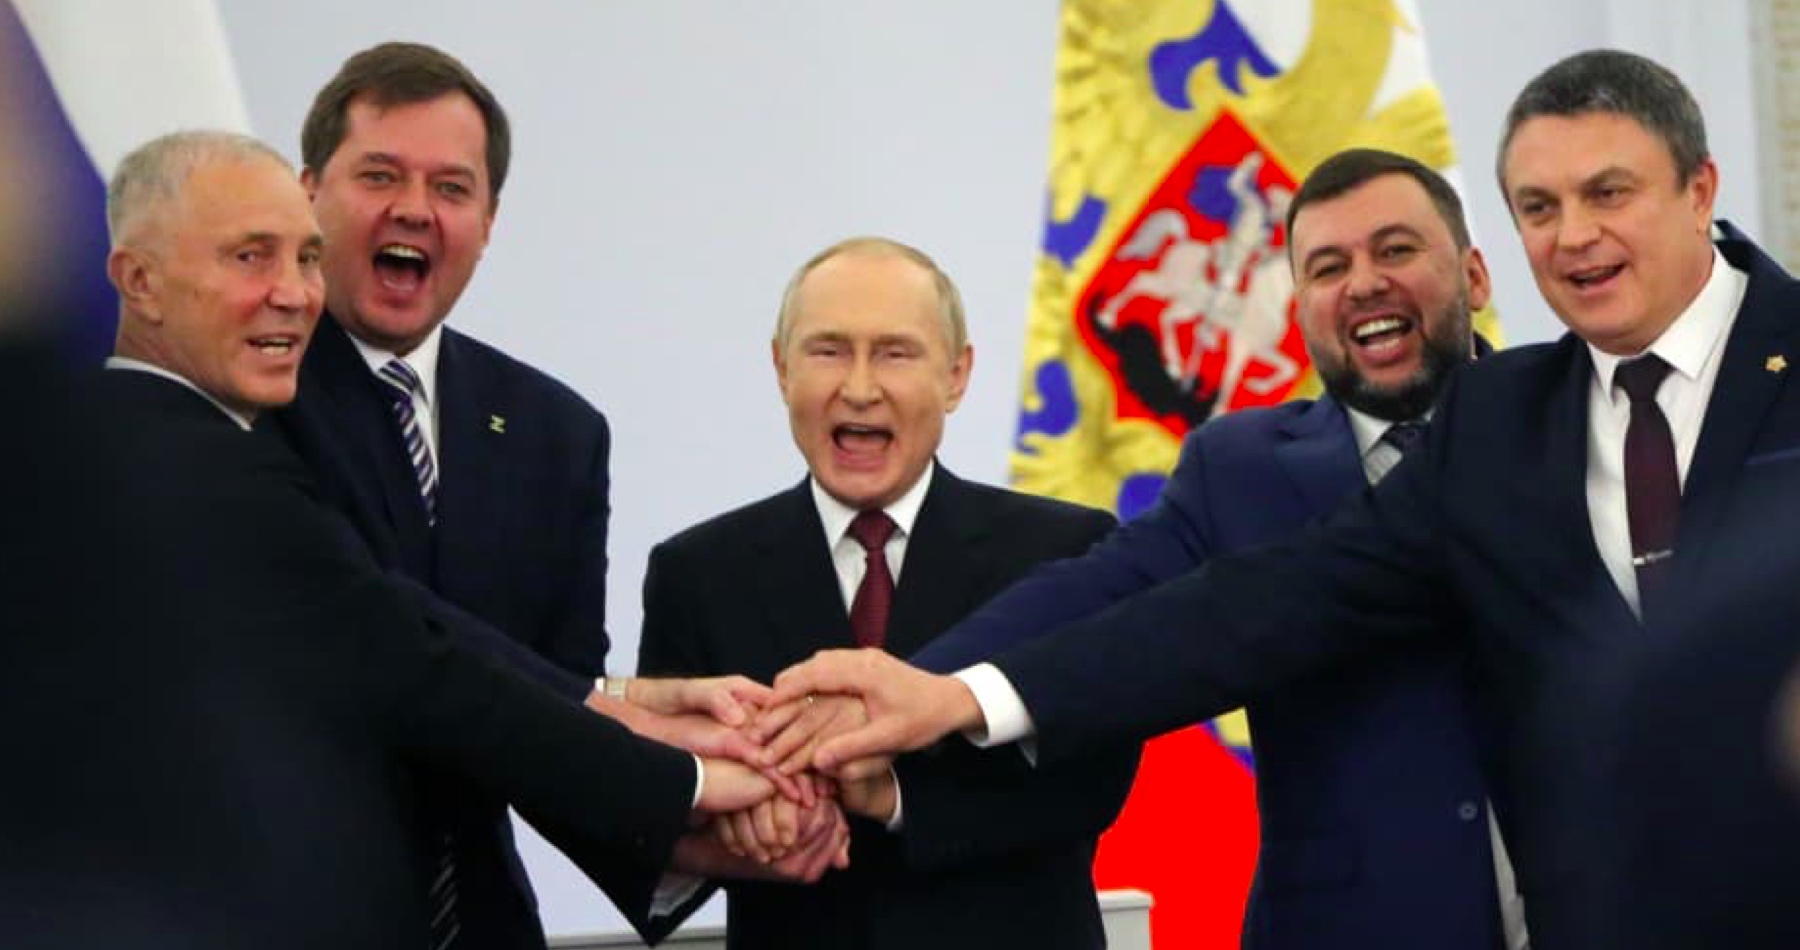 VIDEO: Rossija! Rossija! Obrovské skandování a spojené ruce na symbol jednoty zpečetily na historickém slavnostním ceremoniálu v Kremlu přistoupení 4 ukrajinských oblastí do Ruské federace! Vladimir Putin nabídl Kyjevu poslední možnost k mírovému jednání, ale Zelenský namísto toho podepsal zrychlenou žádost o vstup Ukrajiny do NATO!